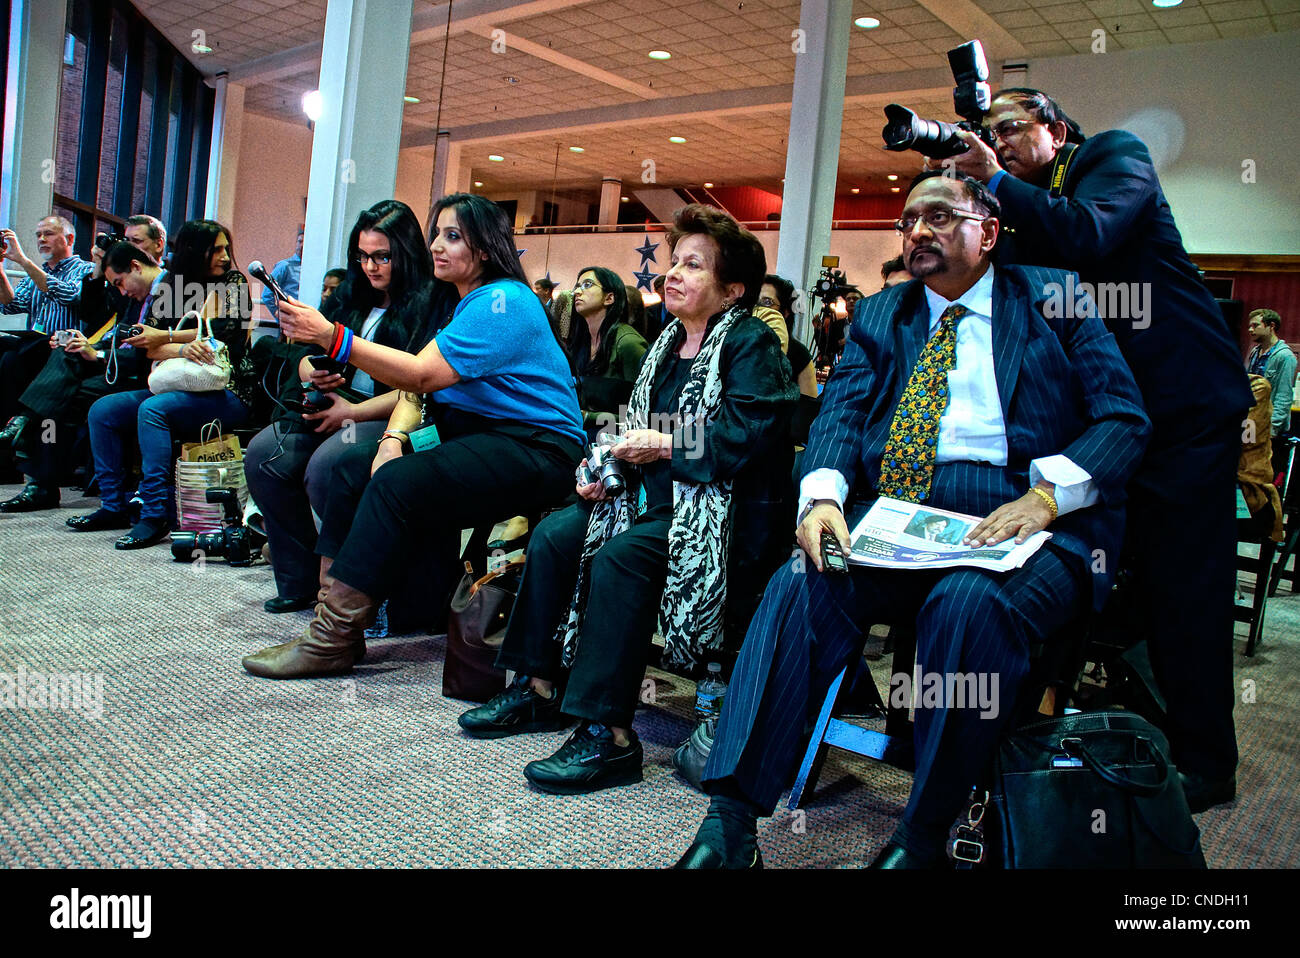 New Haven, CT USA-- La demande de support de film de Bollywood Shah Rukh Khan superstar des questions au cours d'une conférence de presse qu'il a préparé pour accueillir une salle comble de fans au Shubert Theatre à New Haven. Shah Rukh Khan a reçu la bourse Chubb de l'université de Yale. Banque D'Images